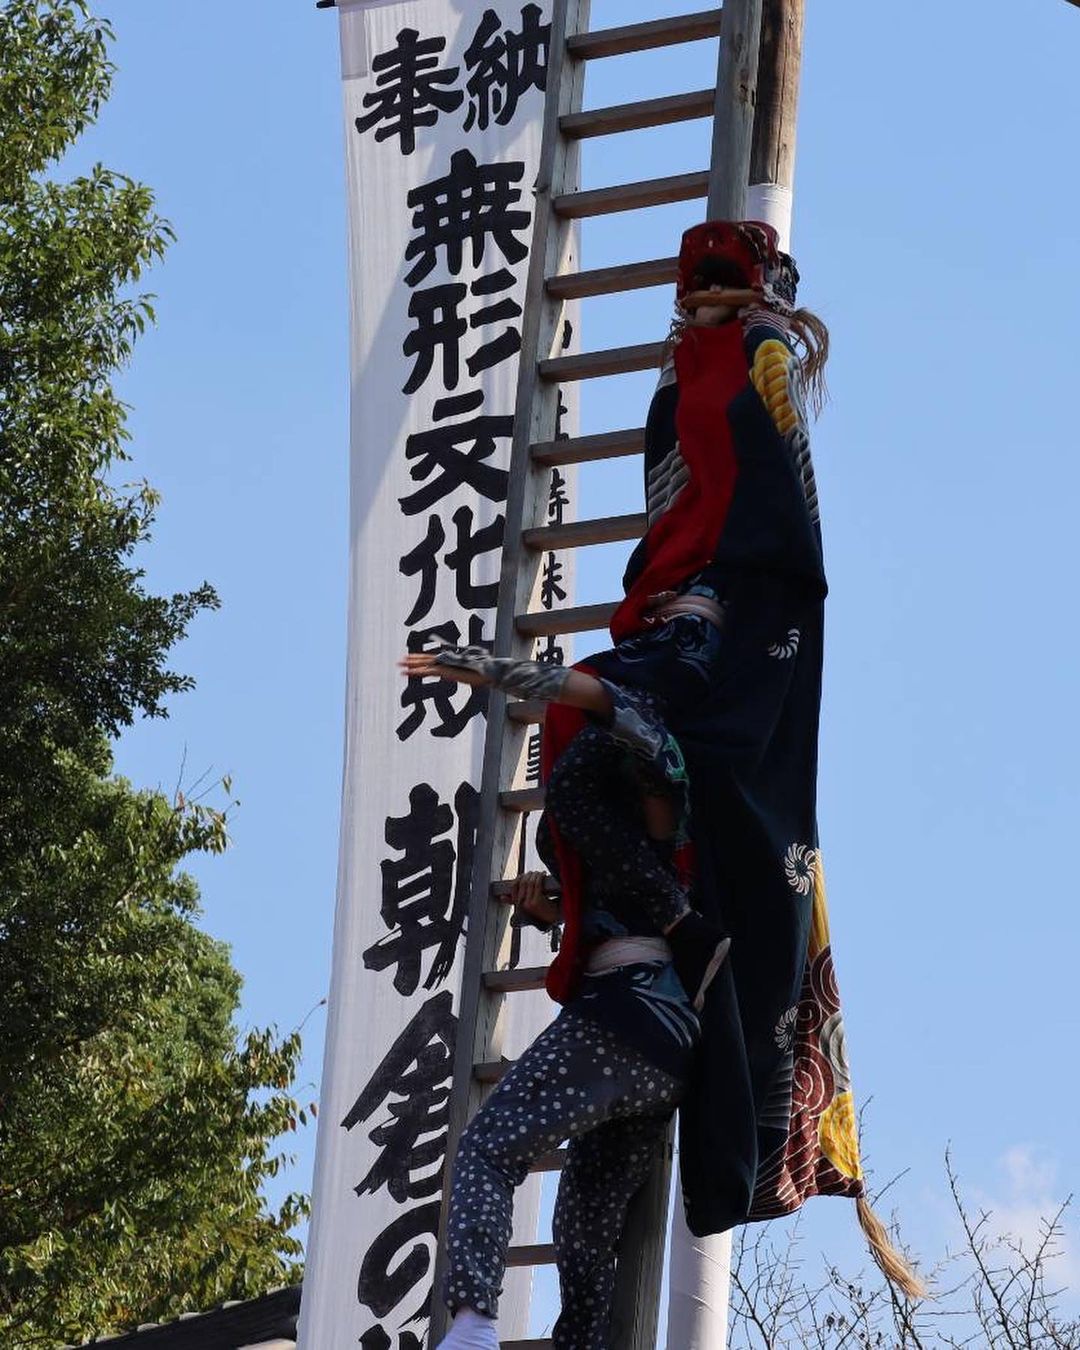 知多市朝倉の牟山神社の「梯子獅子」を観覧